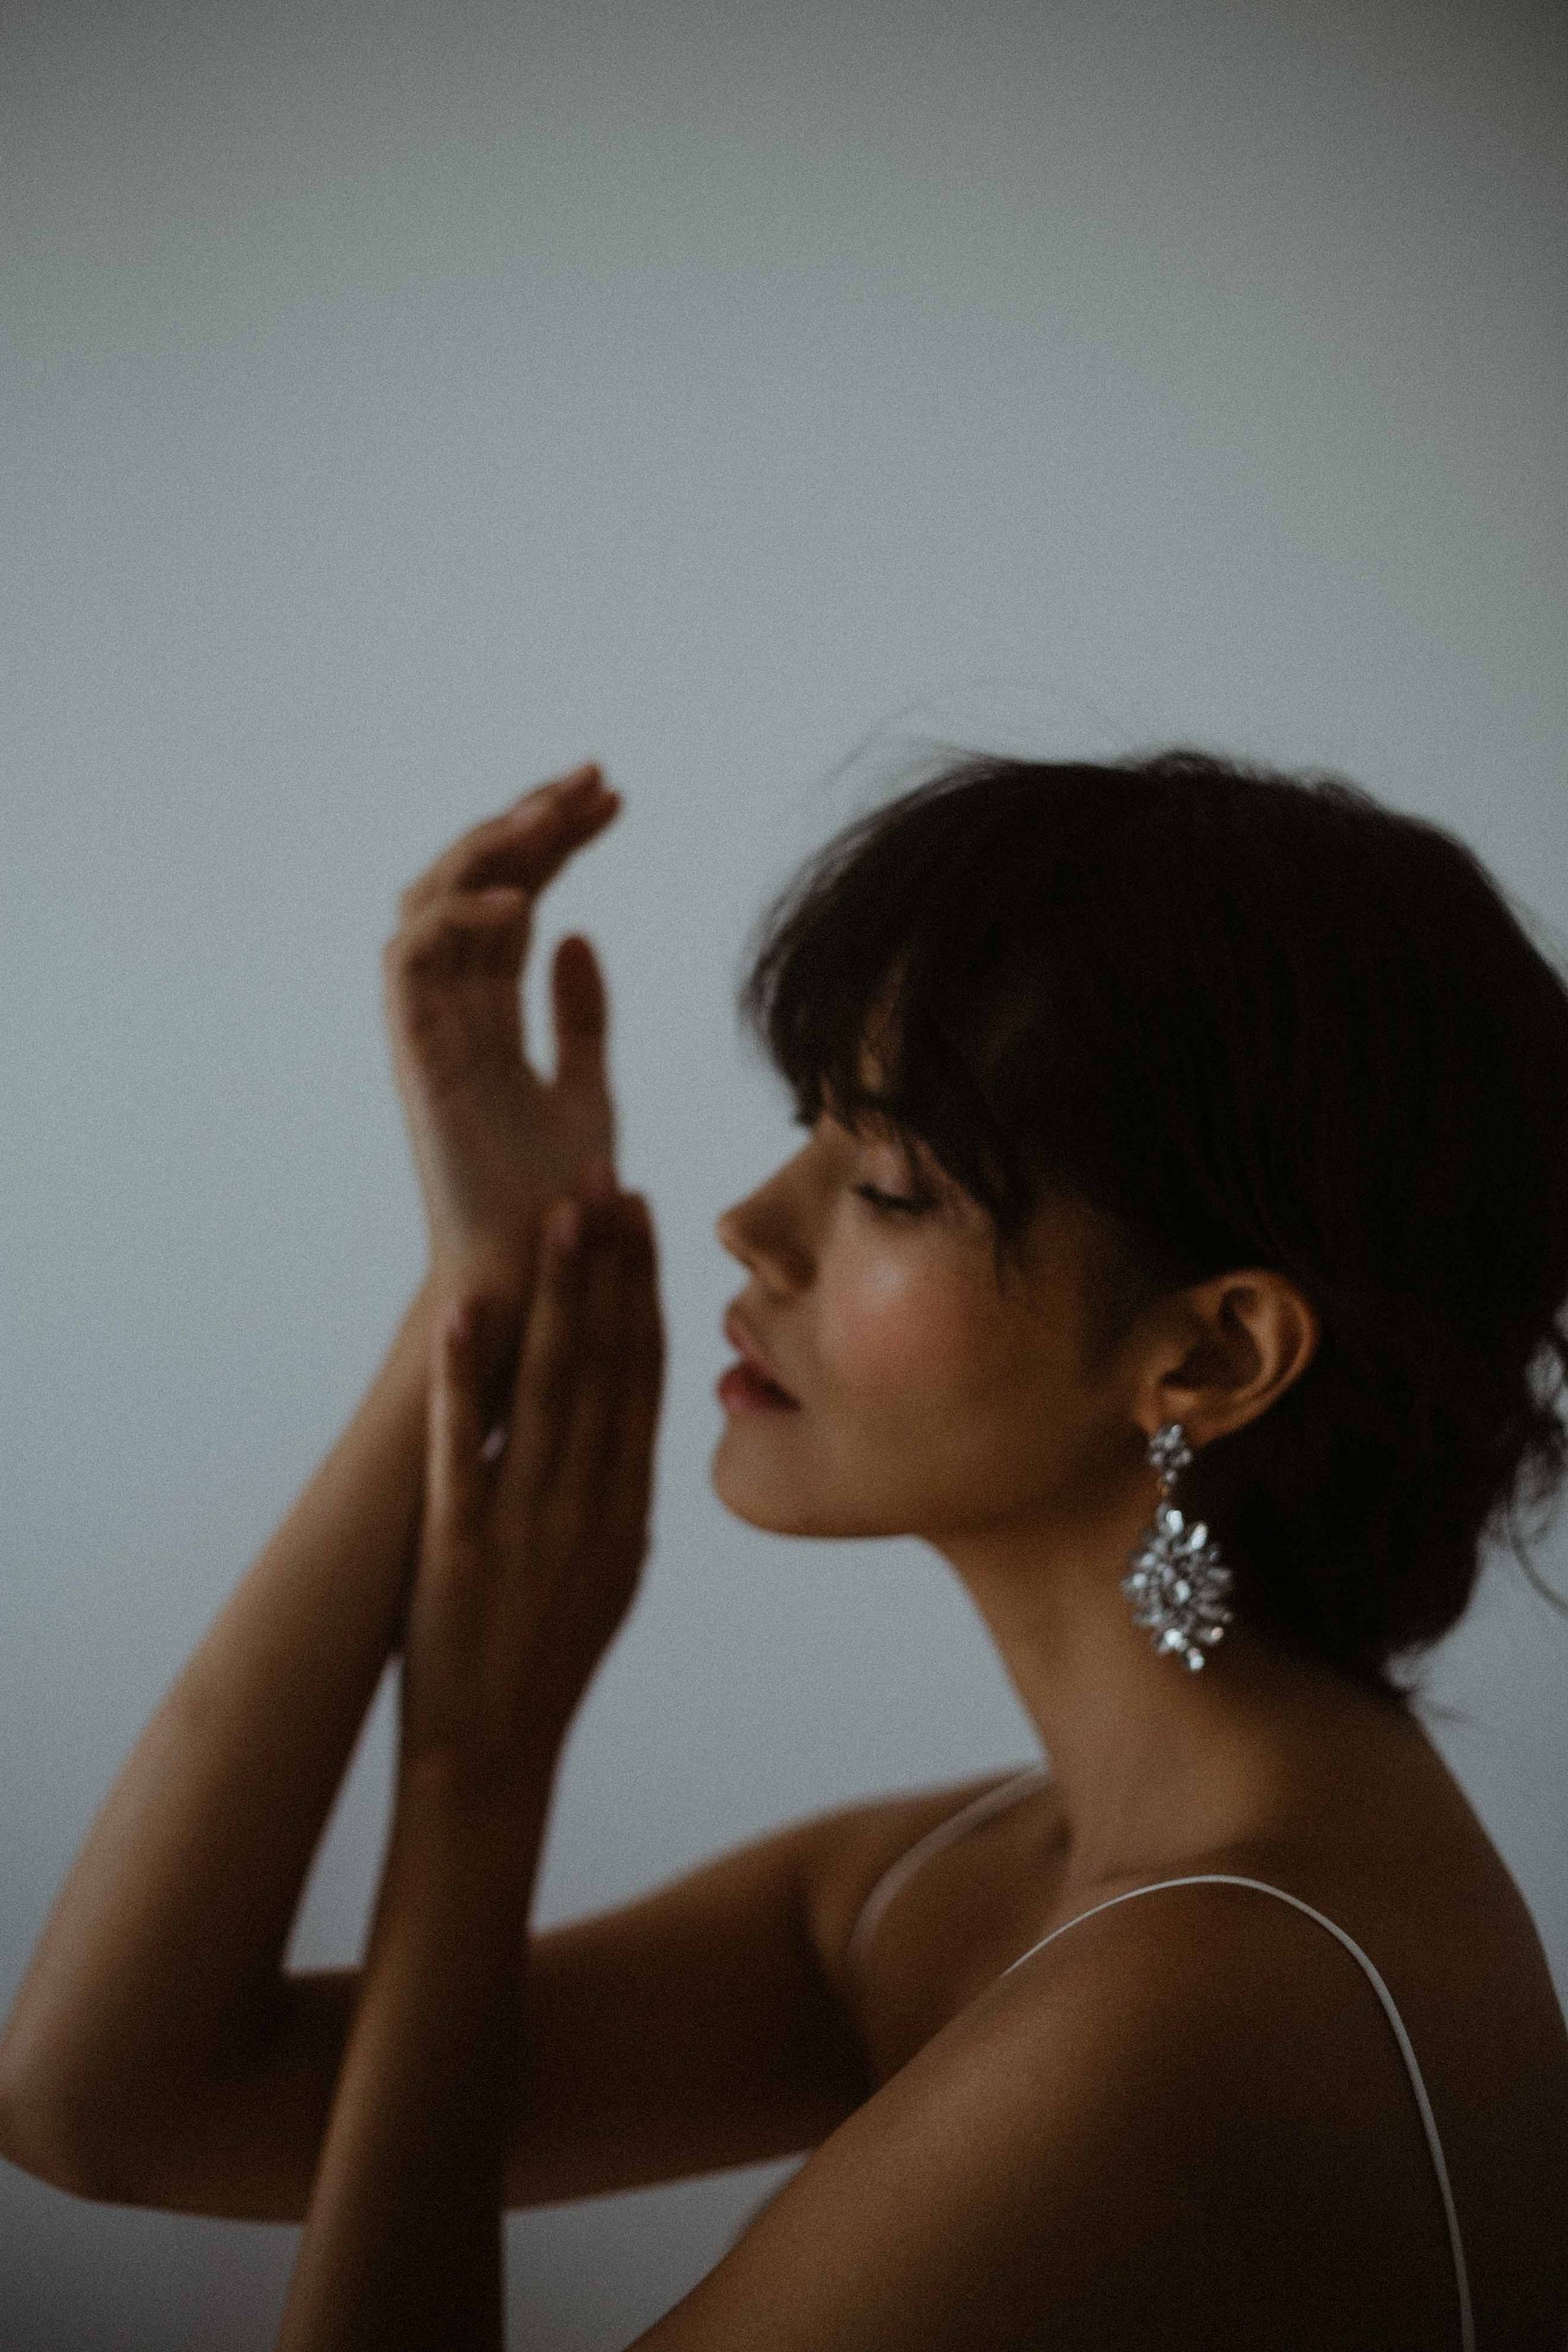 Vega Earrings | Earrings | Sadie Bosworth Atelier